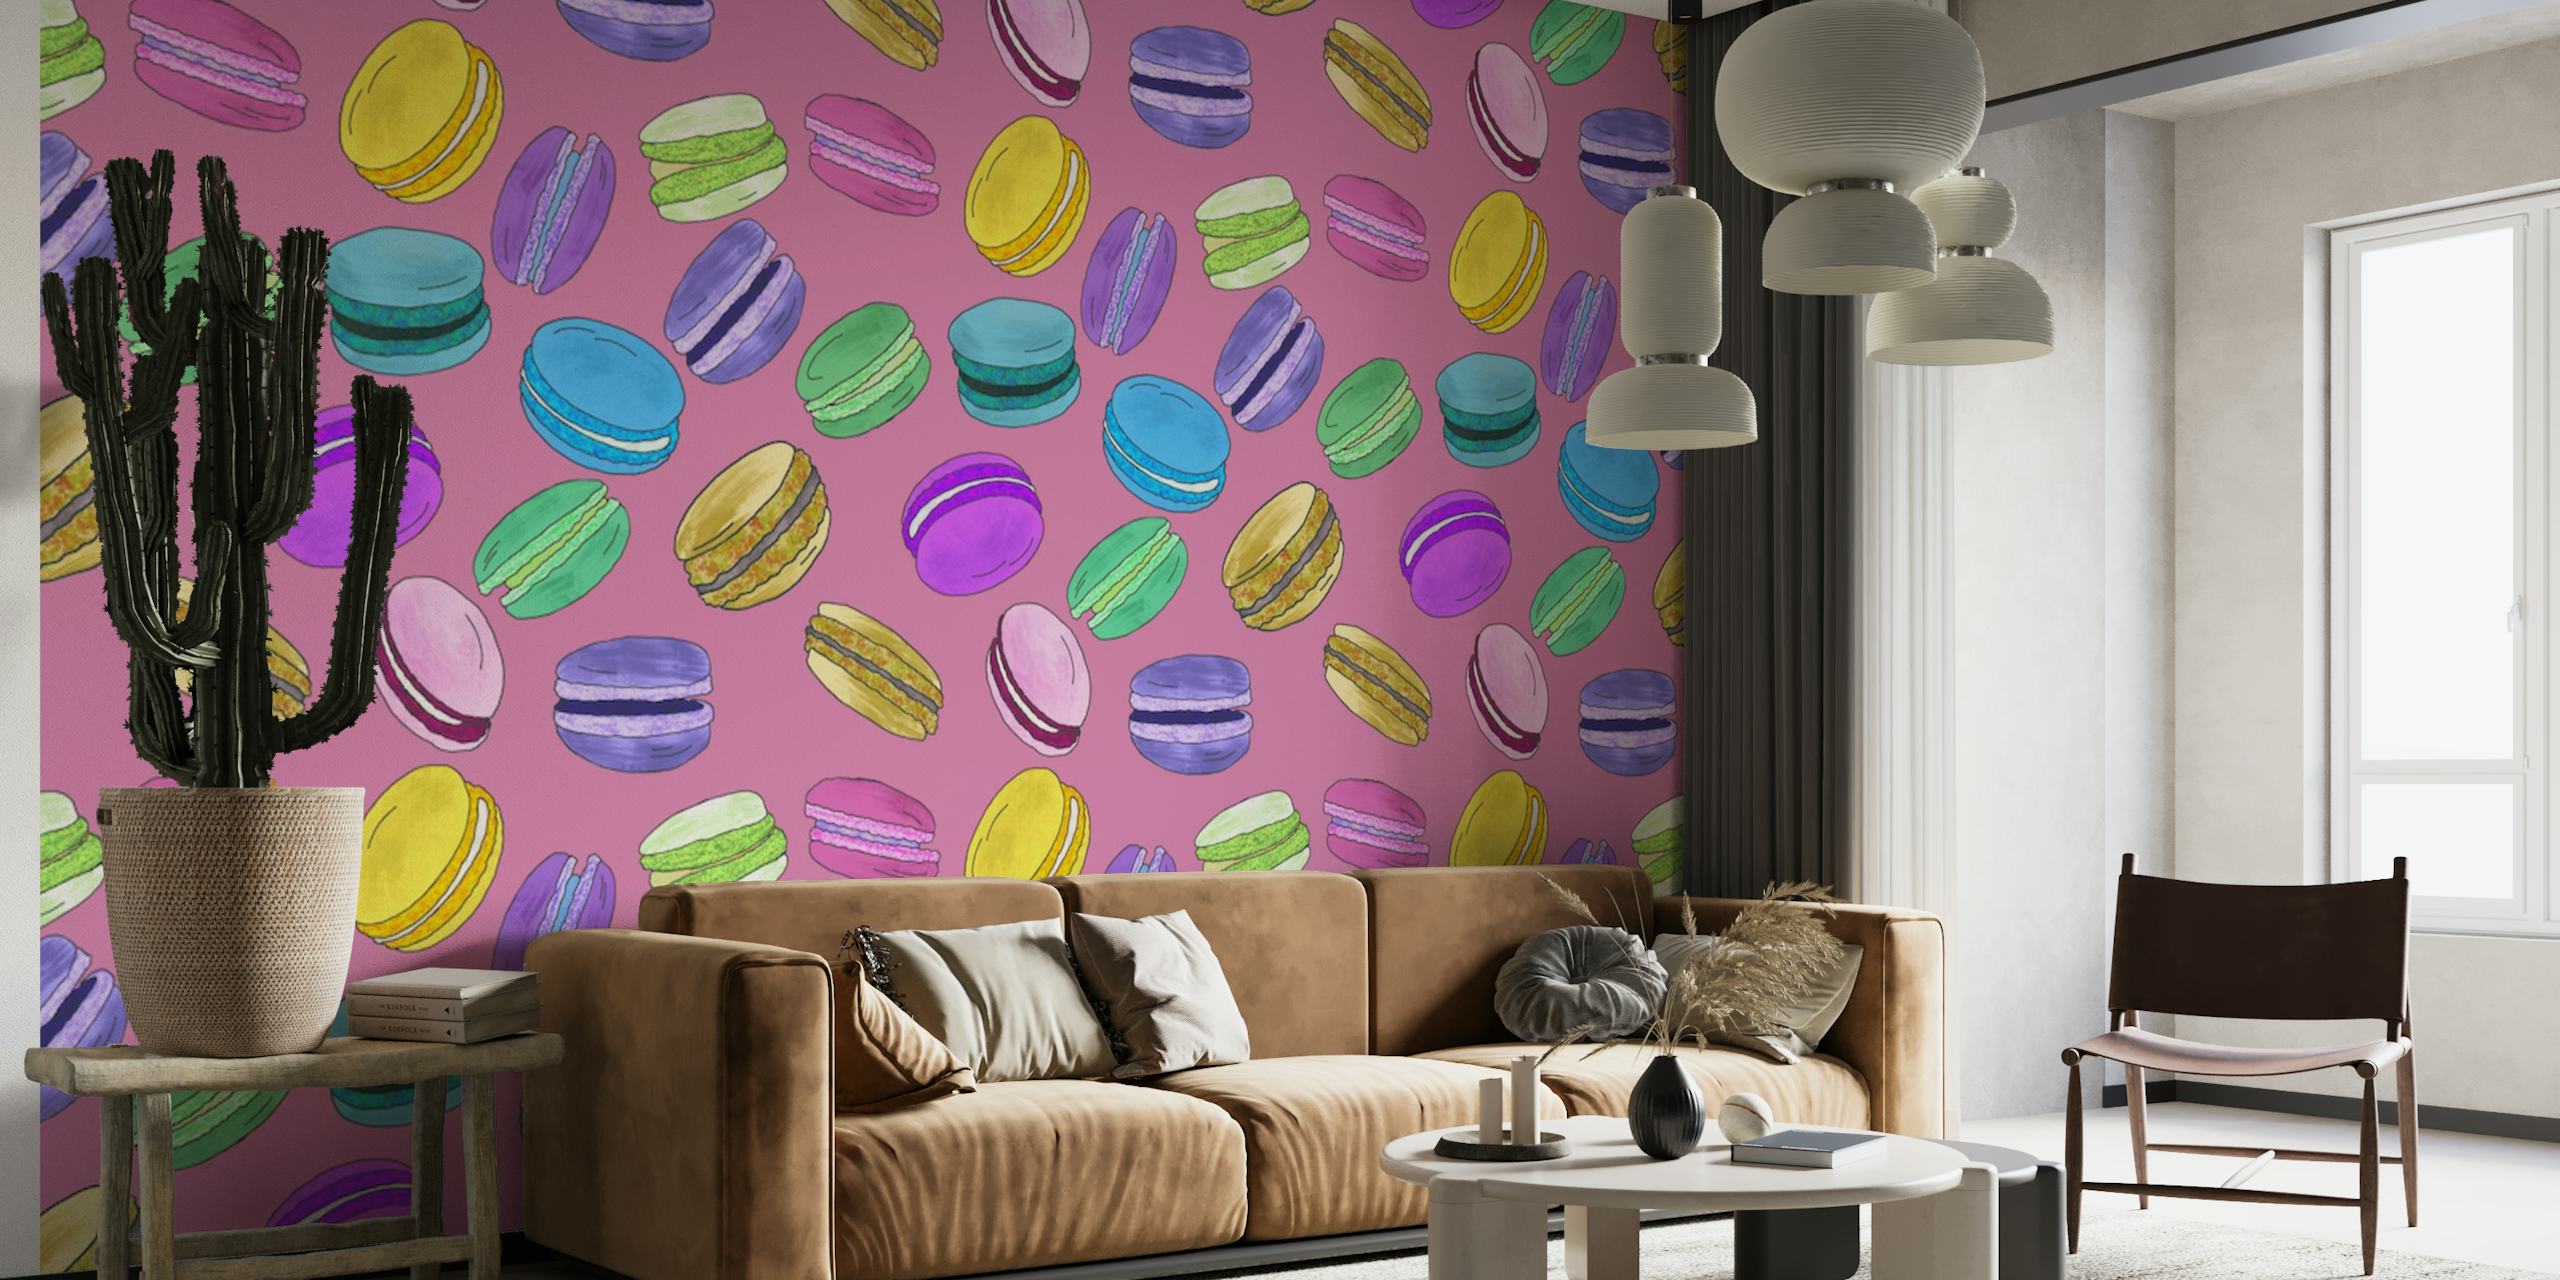 Mural de parede de macarons coloridos em um fundo rosa empoeirado